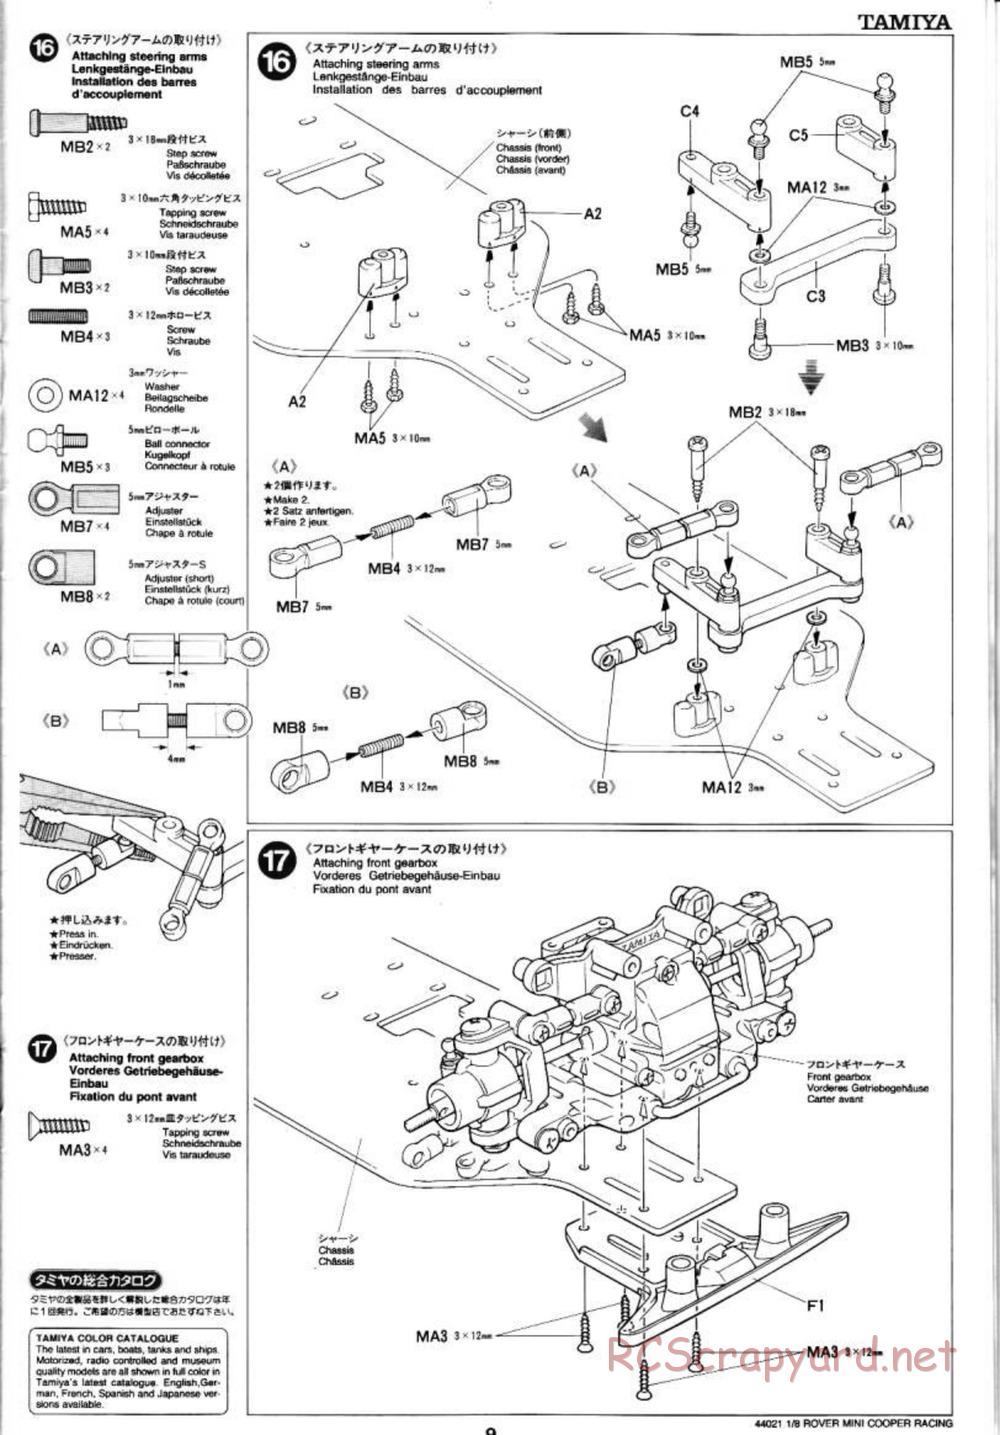 Tamiya - Rover Mini Cooper Racing - TG10 Mk.1 Chassis - Manual - Page 9